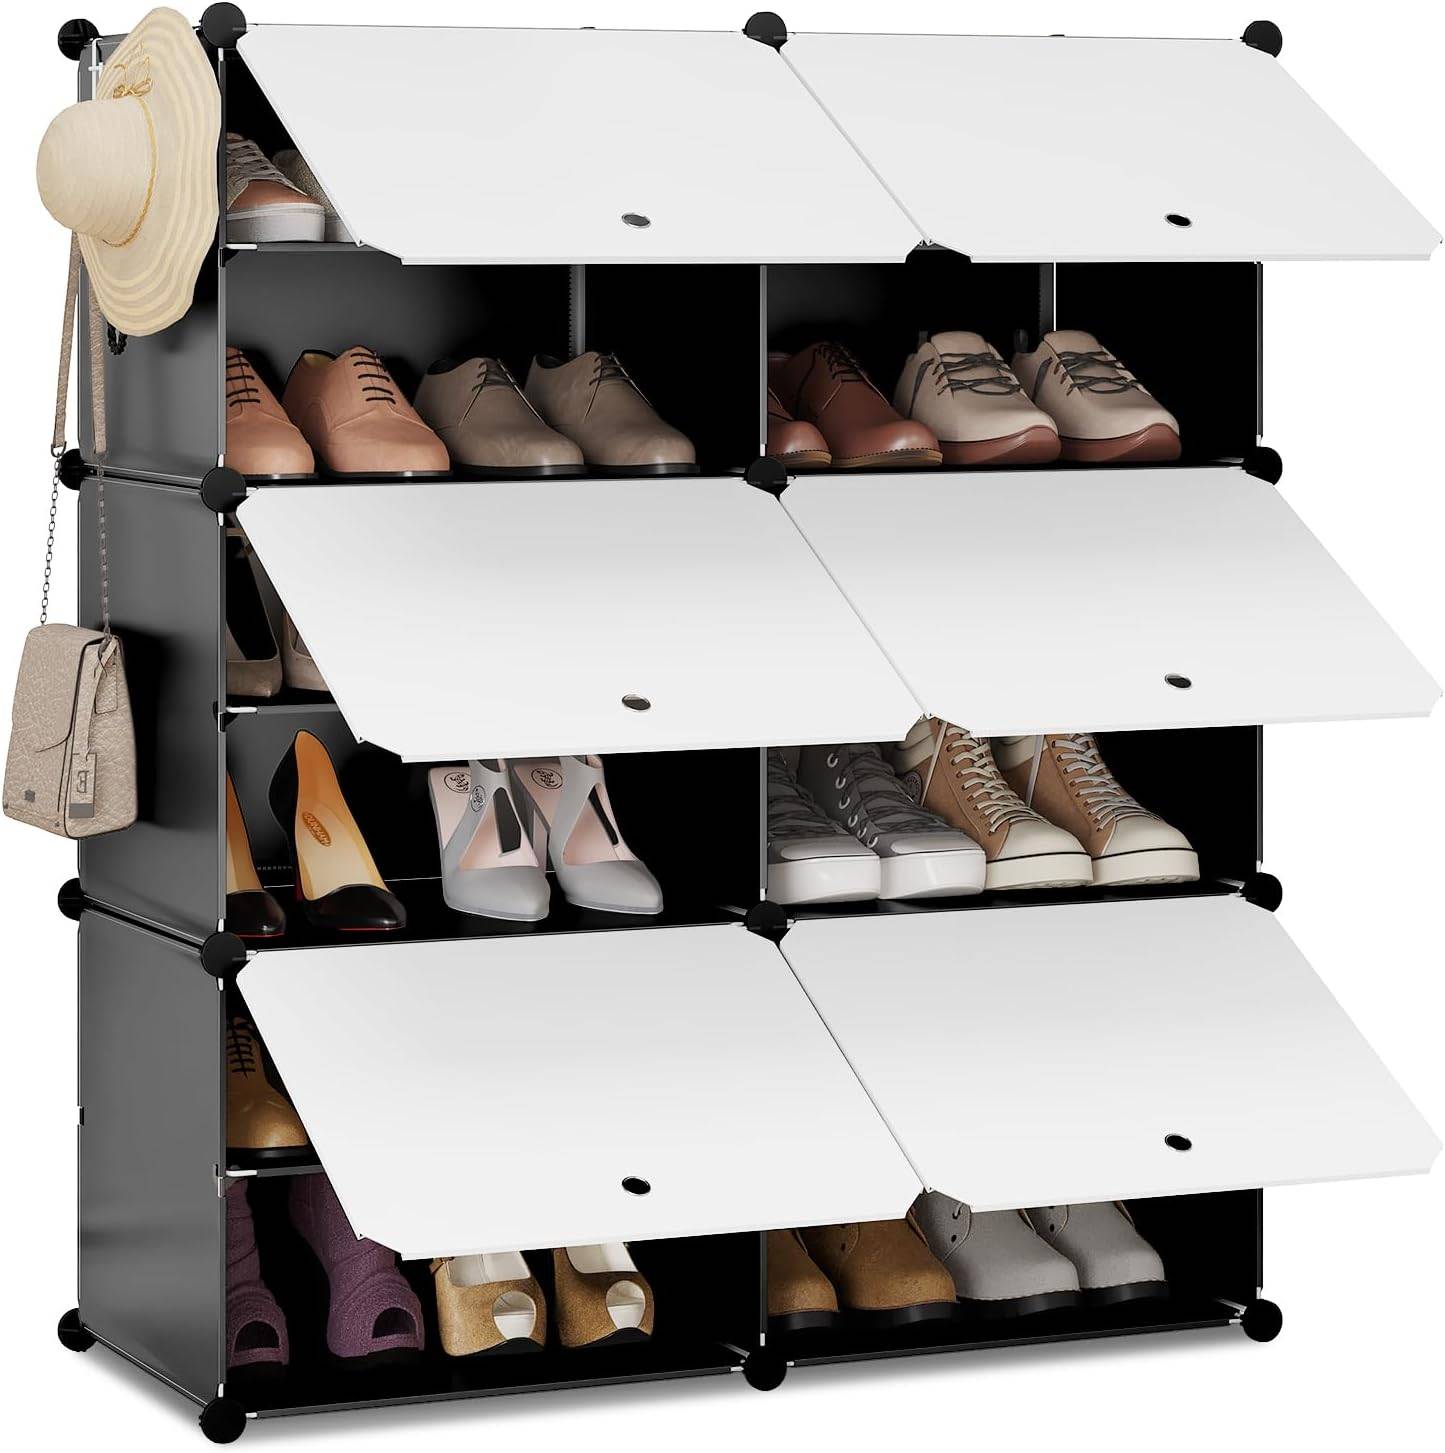 Schuhregal mit 6 Fächern, Schuhaufbewahrung für 24 Paar Schuhe,  Schuhschrank für Flur Wohnzimmer Schlafzimmer, Schuhorganizer mit Türen,  aus modularen PP-Platten, Weiß Schwarz